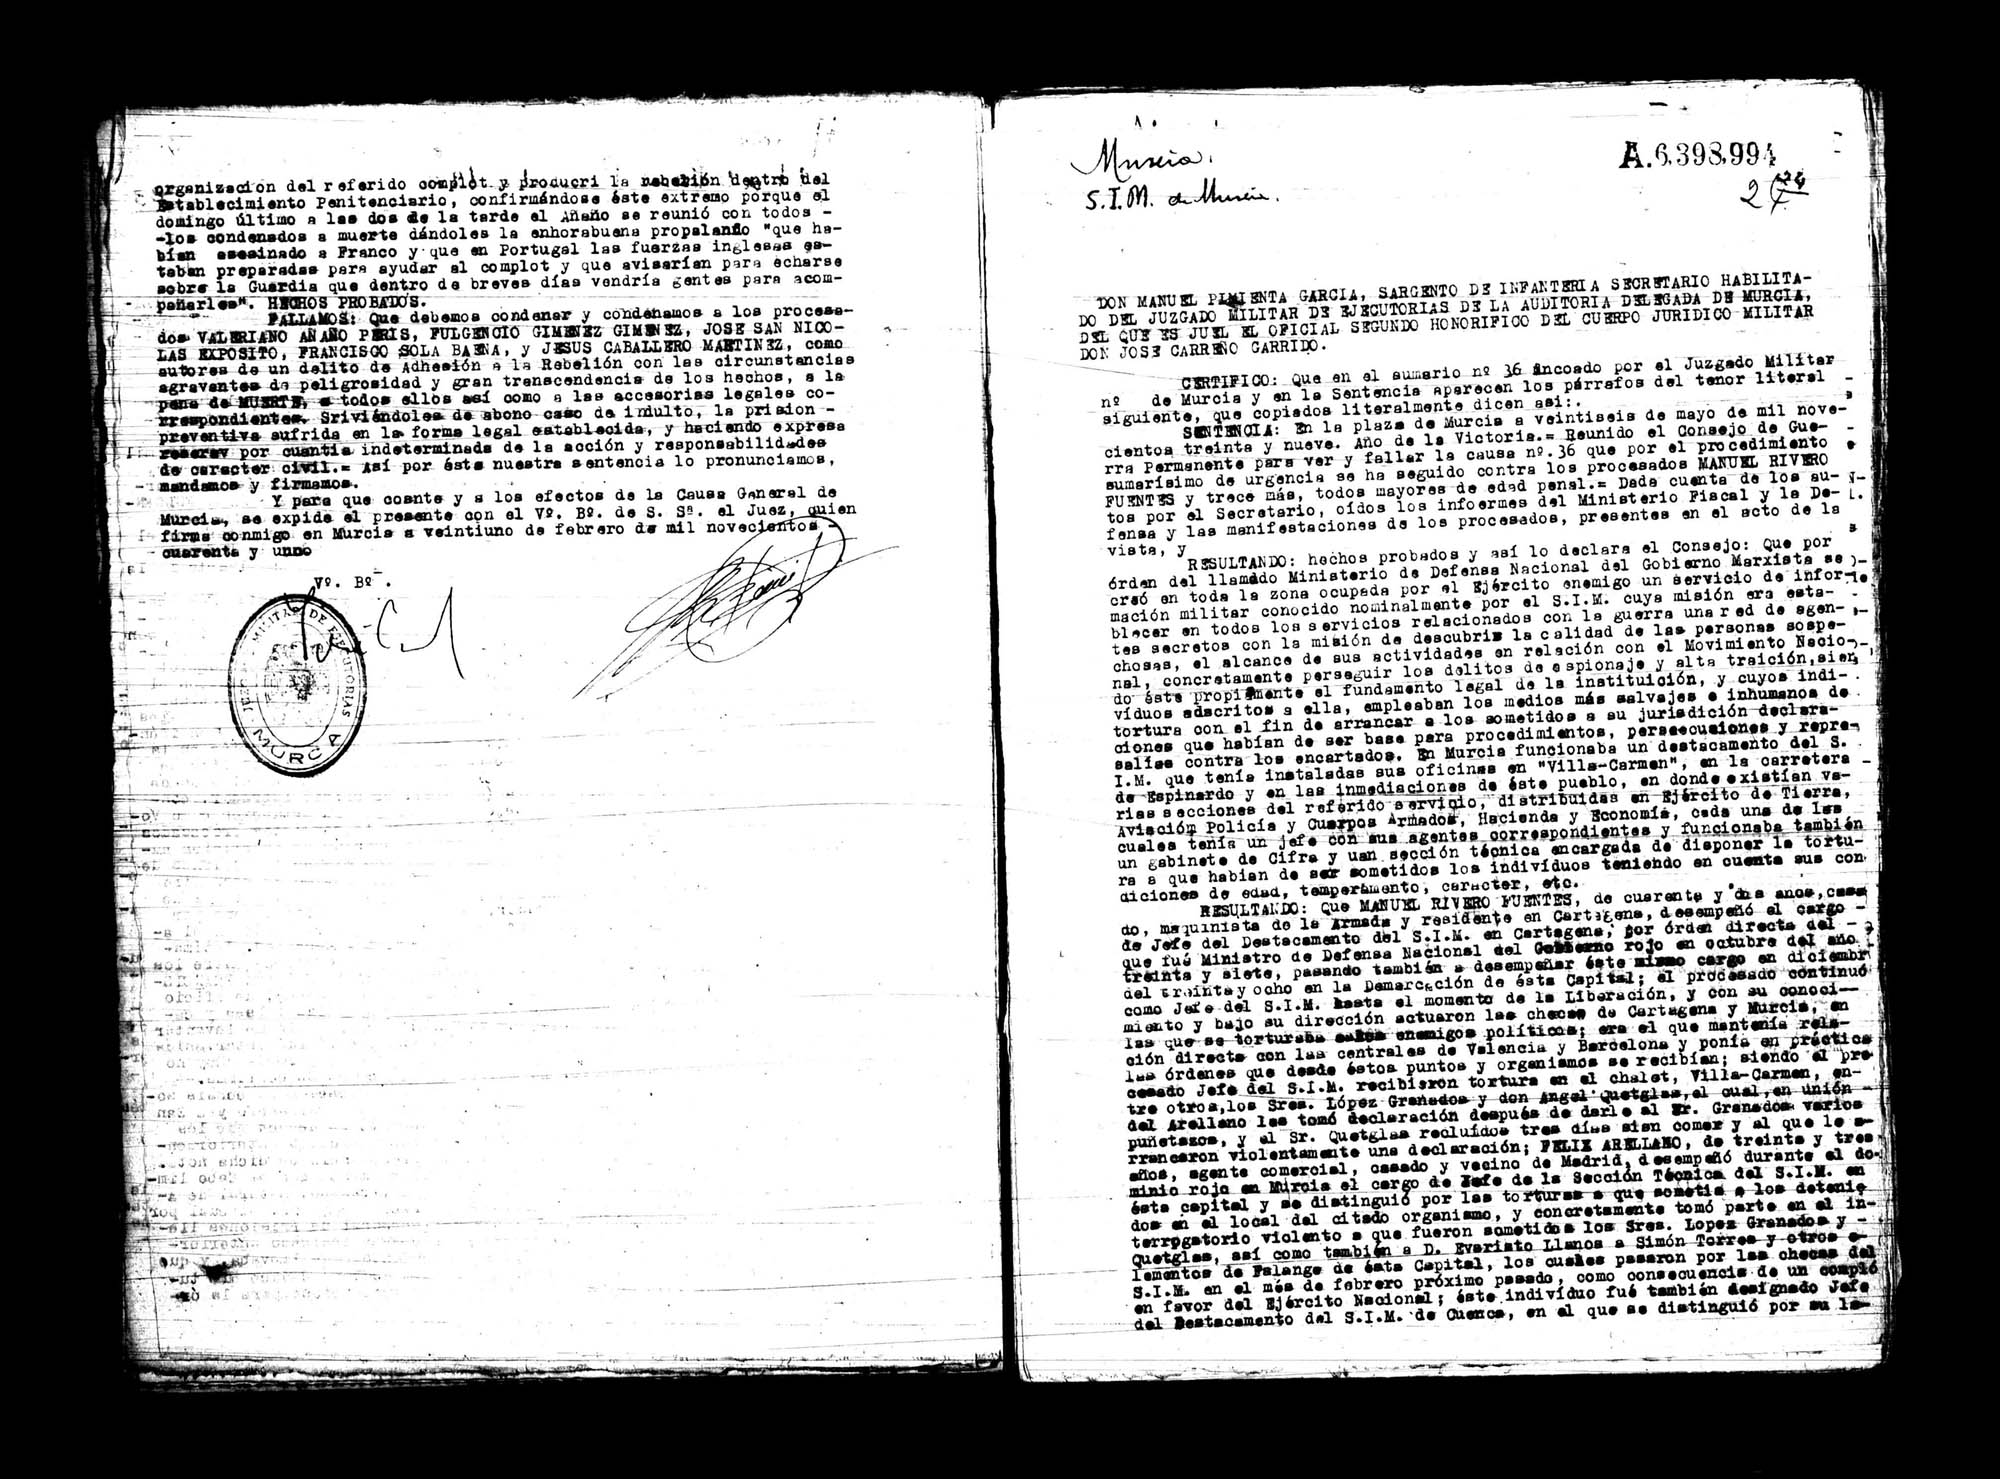 Certificado de la sentencia pronunciada contra Valeriano Añaño Peris, Fulgencio Giménez Giménez, José San Nicolás Expósito, Francisco Solera Baena y Jesús Caballero Martínez, causa 6926, el 17 de enero de 1940 en Murcia.